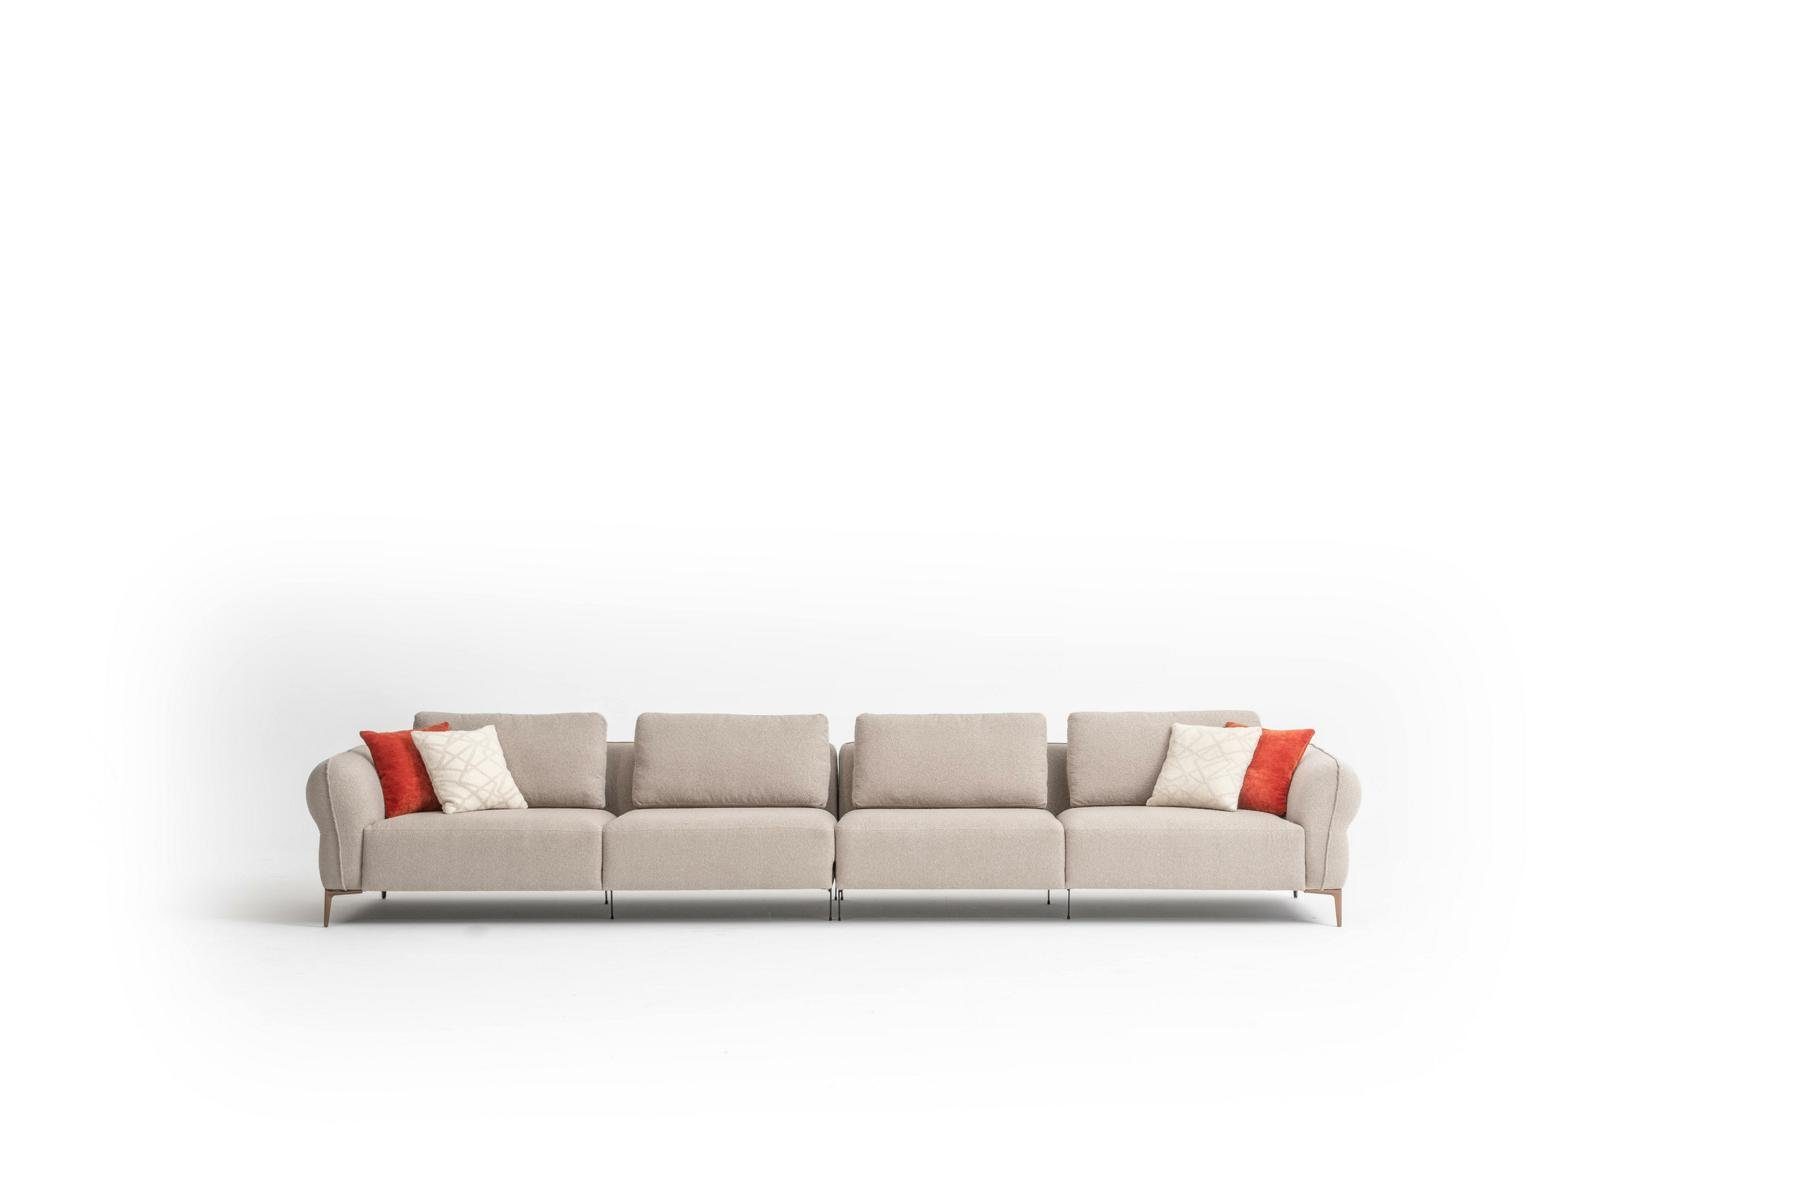 JVmoebel Big-Sofa Luxus Sofa 6 Sitzer Polstersofa Wohnzimmer Modern Design Stil Neu, Made in Europe